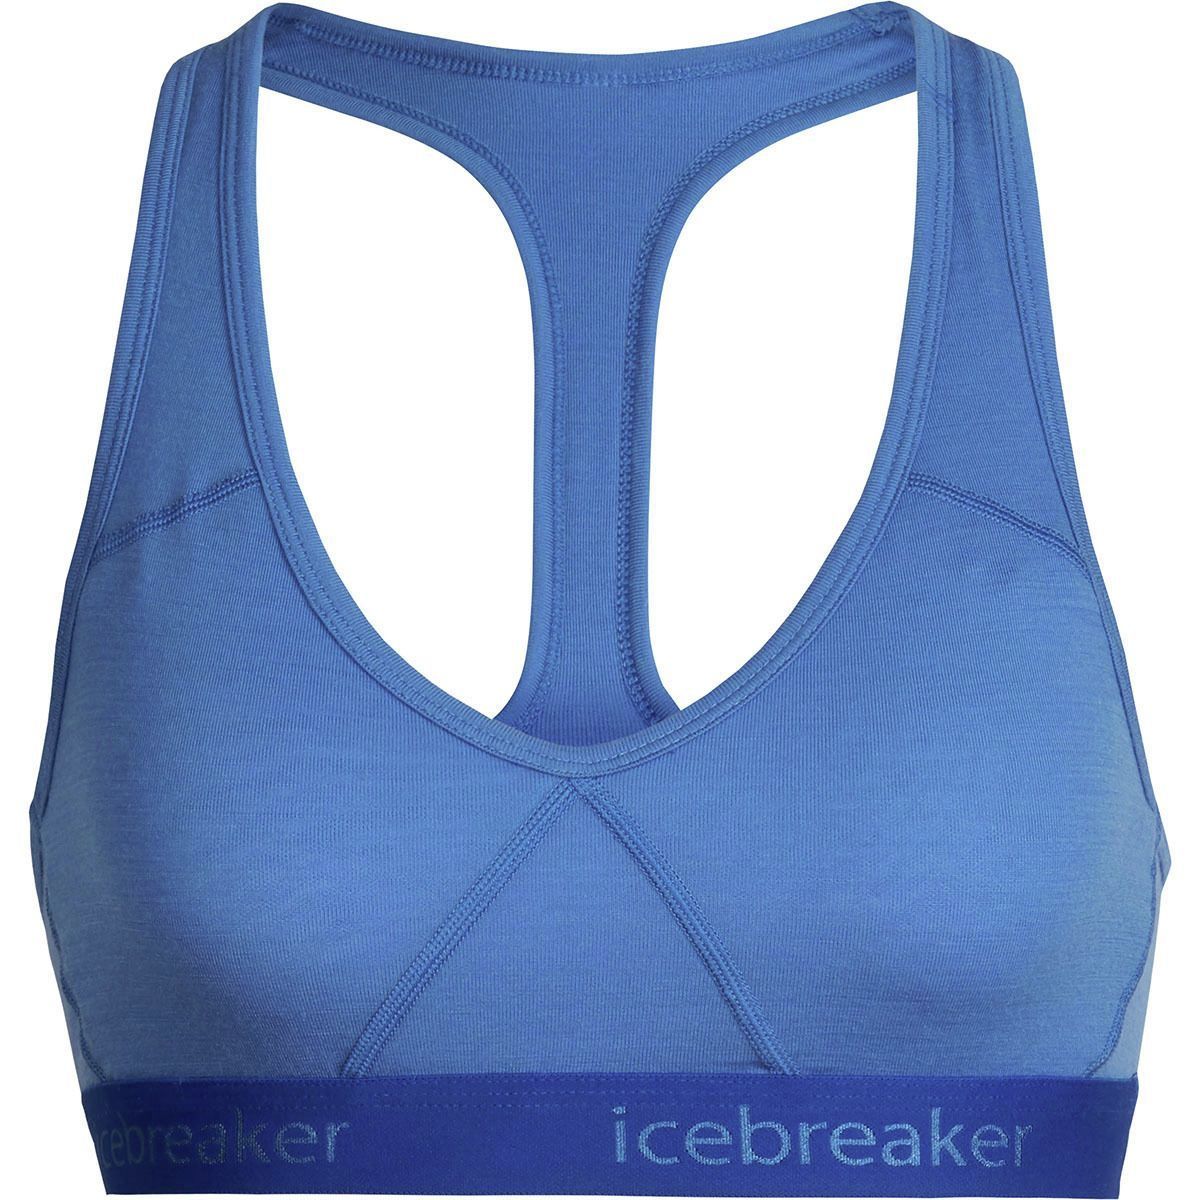 Icebreaker Merino Sprite bra - Grey